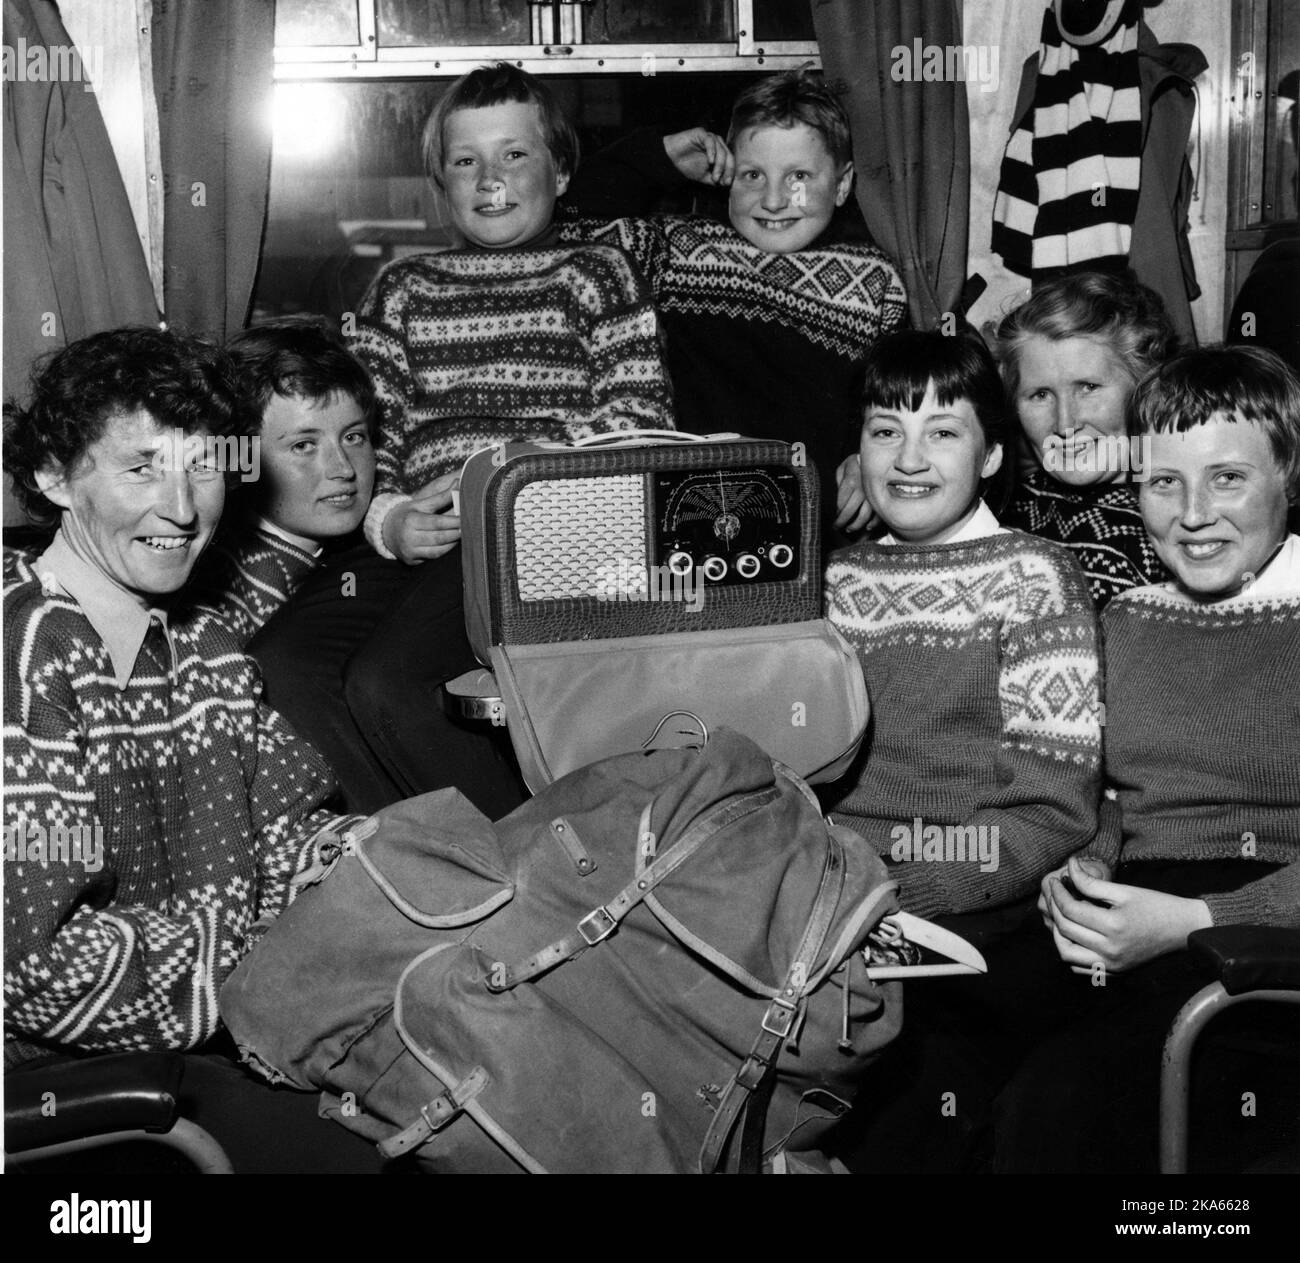 Zaini, radio portatile e splendidi maglioni a maglia a mano i giovani viaggiano accanto a uno scomparto ferroviario sulla strada per påskefjellet, Foto di Jan Nordby / NTB / SCANPIX Foto Stock